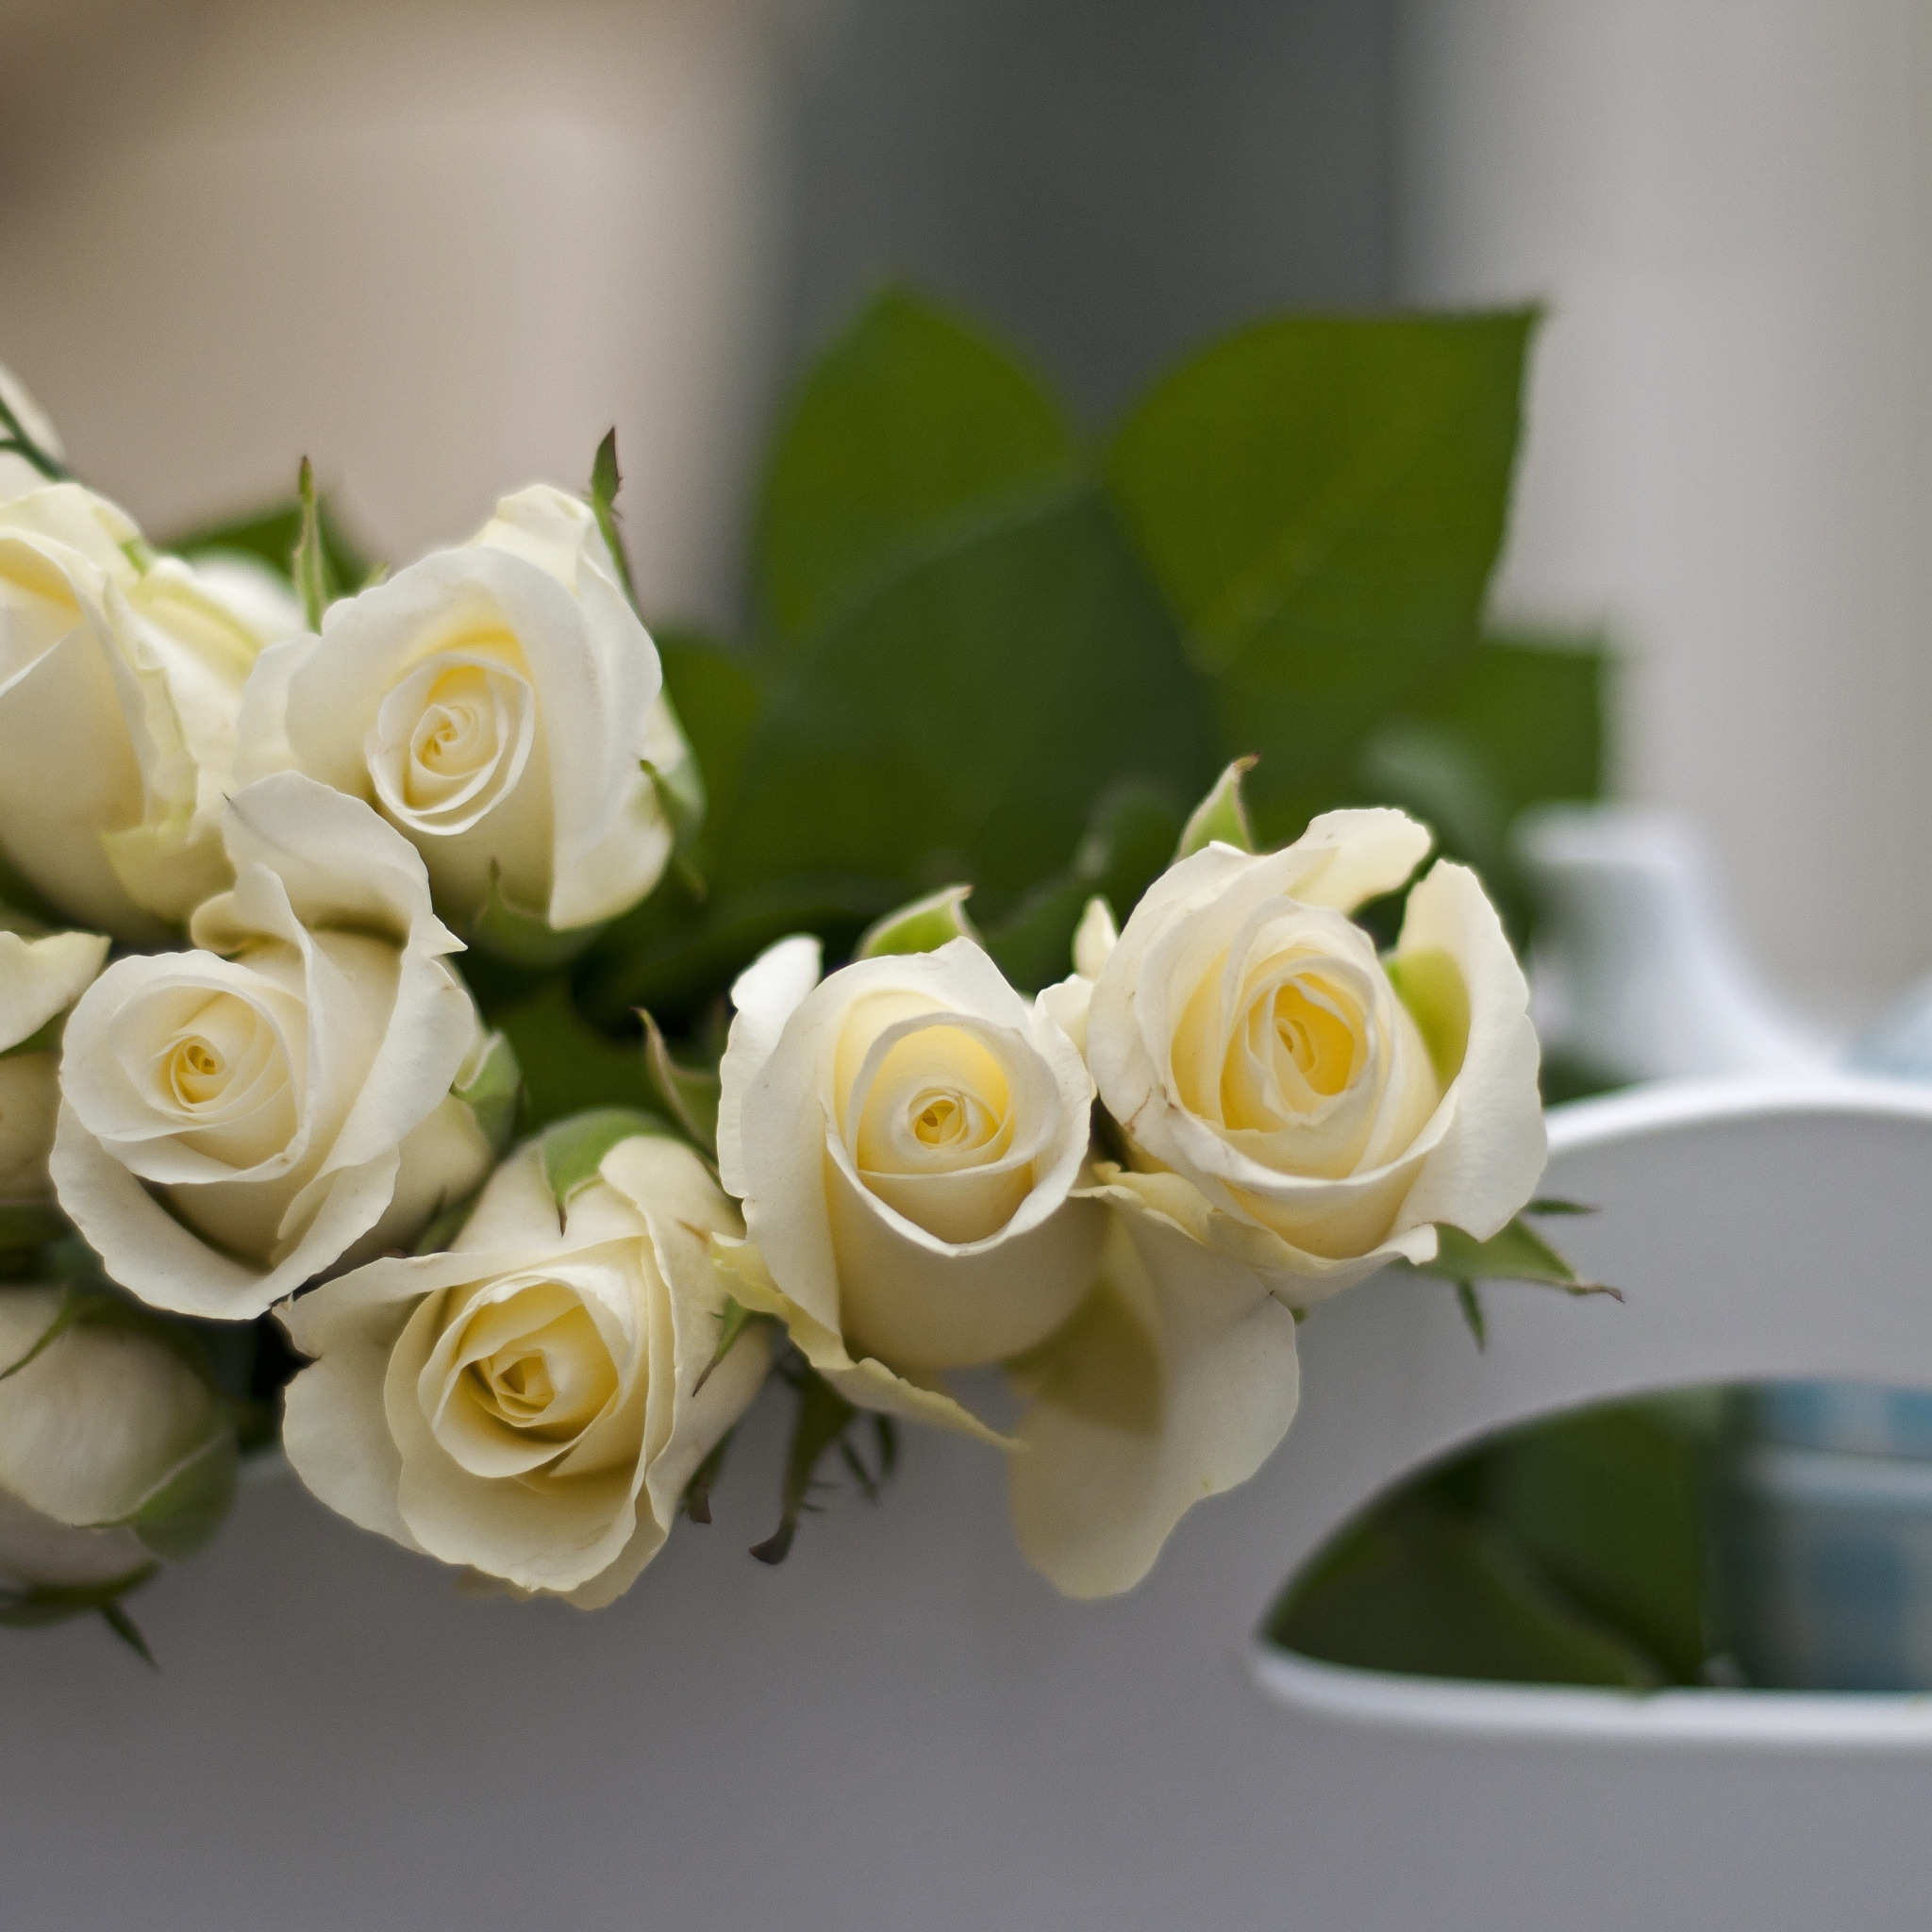 Цветы доброе утро красивой девушке. Белые цветы. С добрым утром девушке. Пожелания с добрым утром любимой девушке. Букет белых роз на столе.